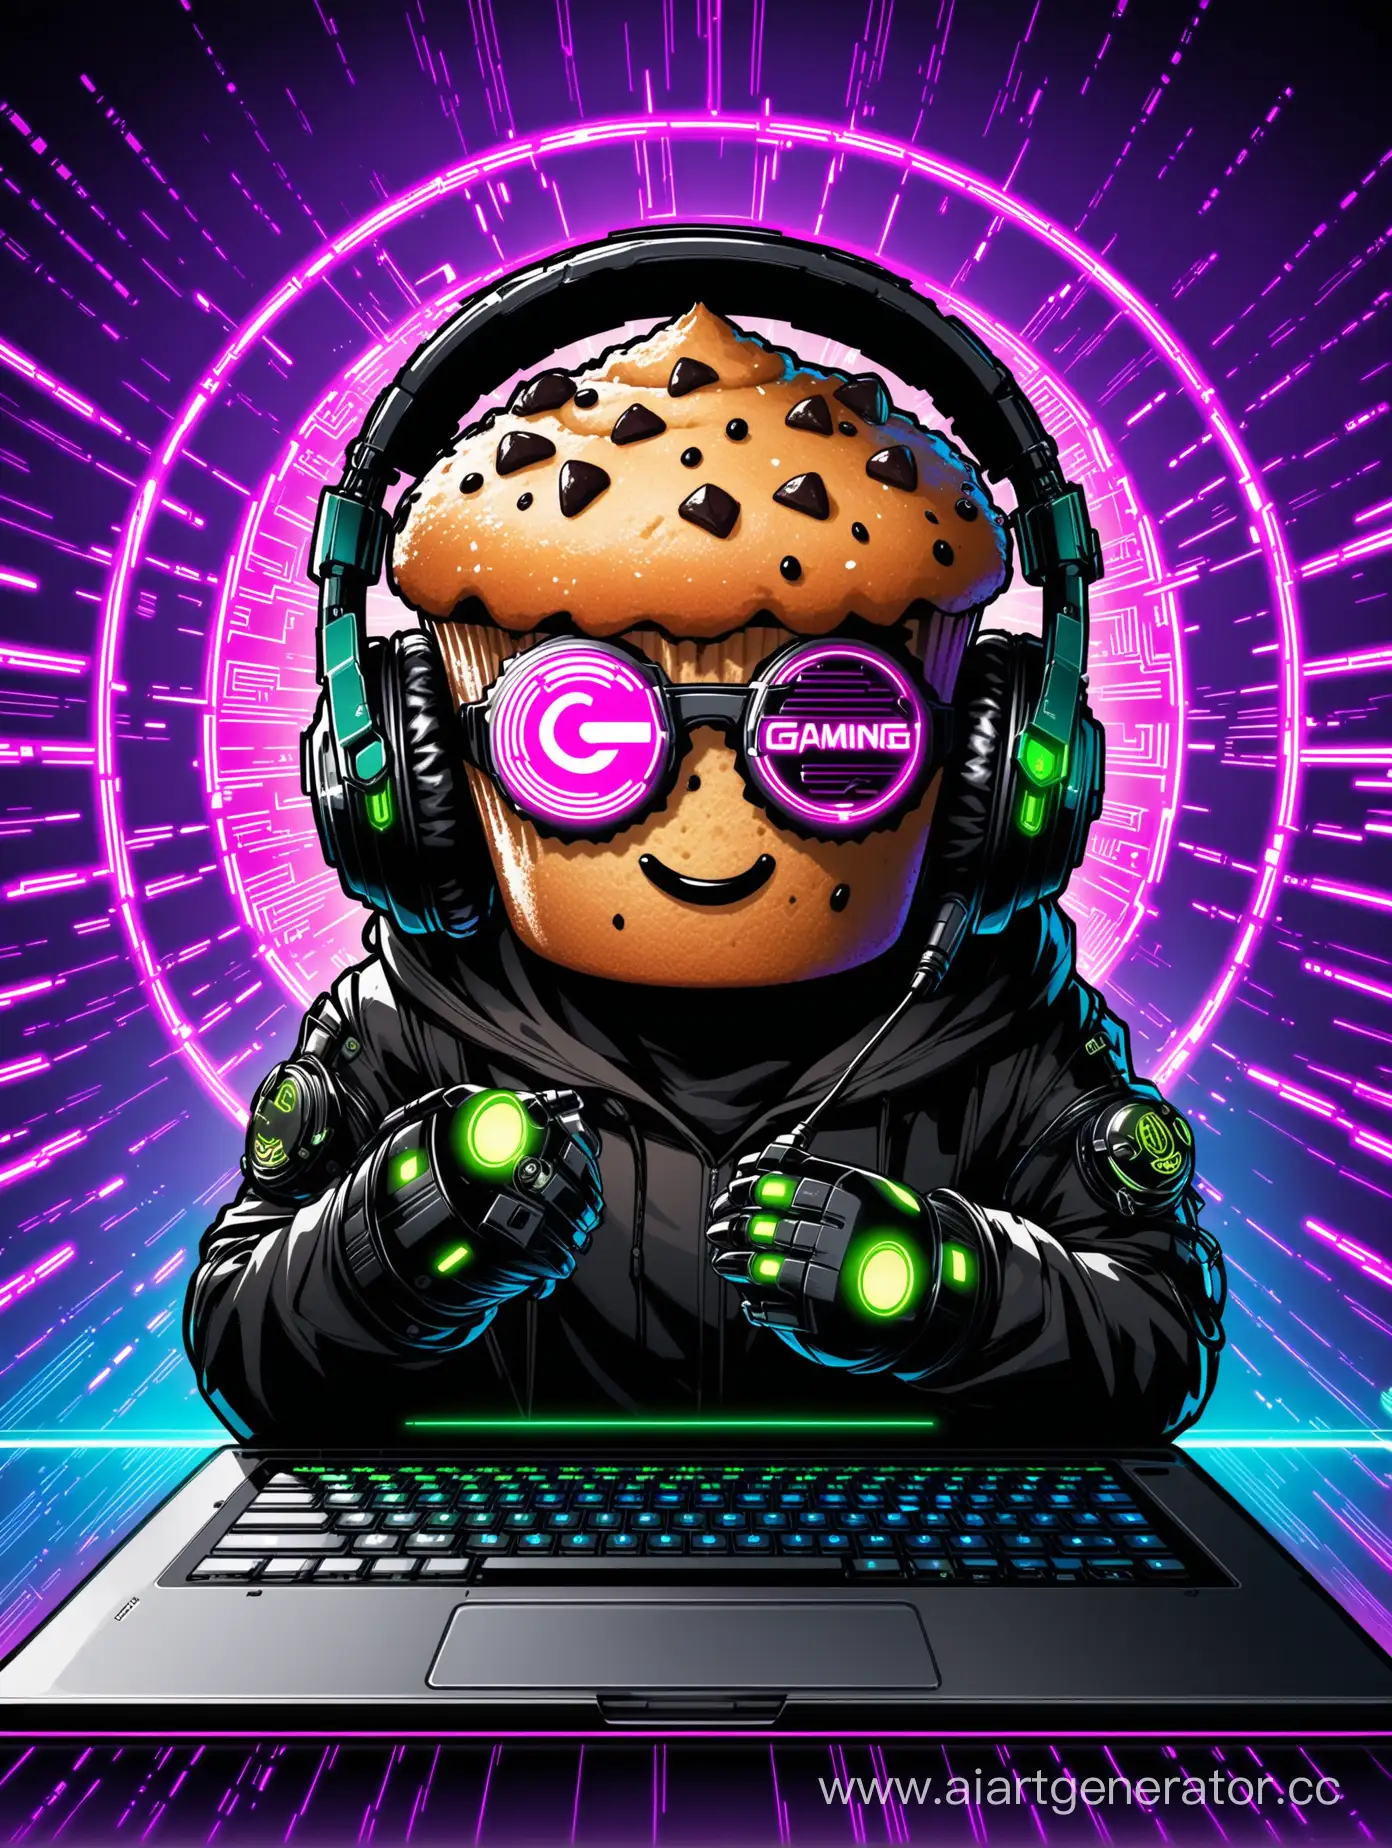  кекс с лицом в стиле киберпанка в черных очках и игровых наушниках с микрофоном на фоне ноутбука игрового логотип